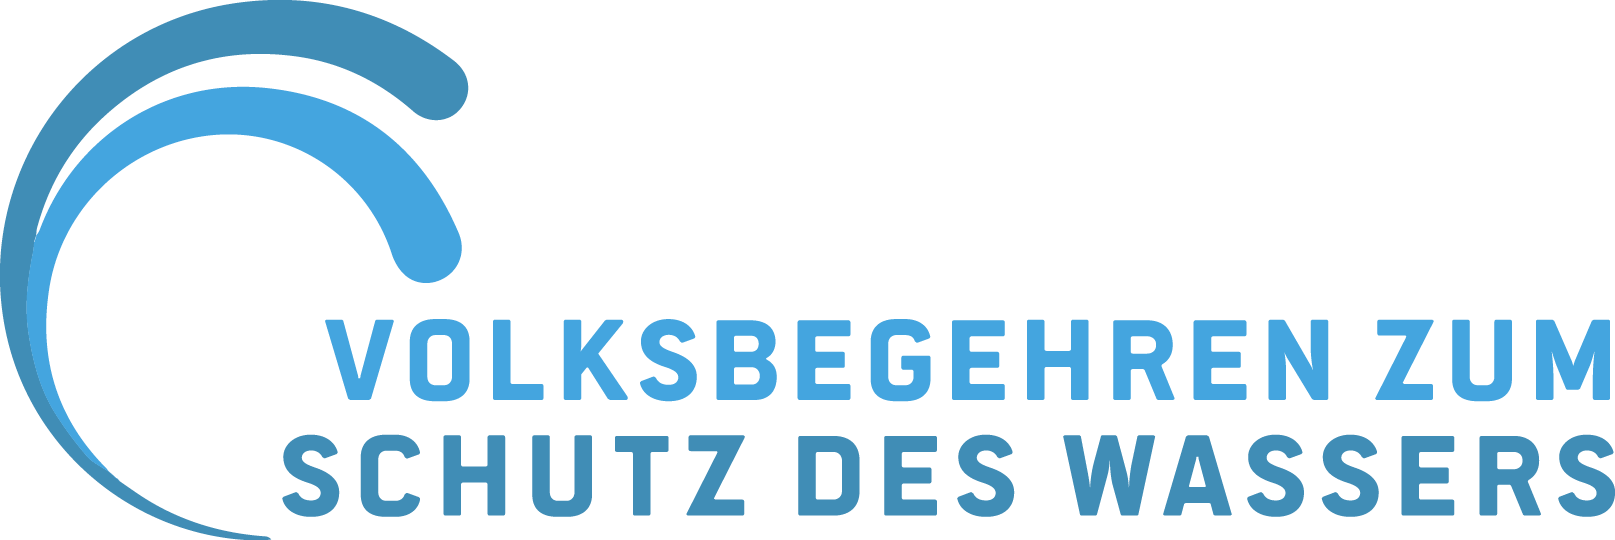 Logo des Volksbegehrens zum Schutz des Wasser